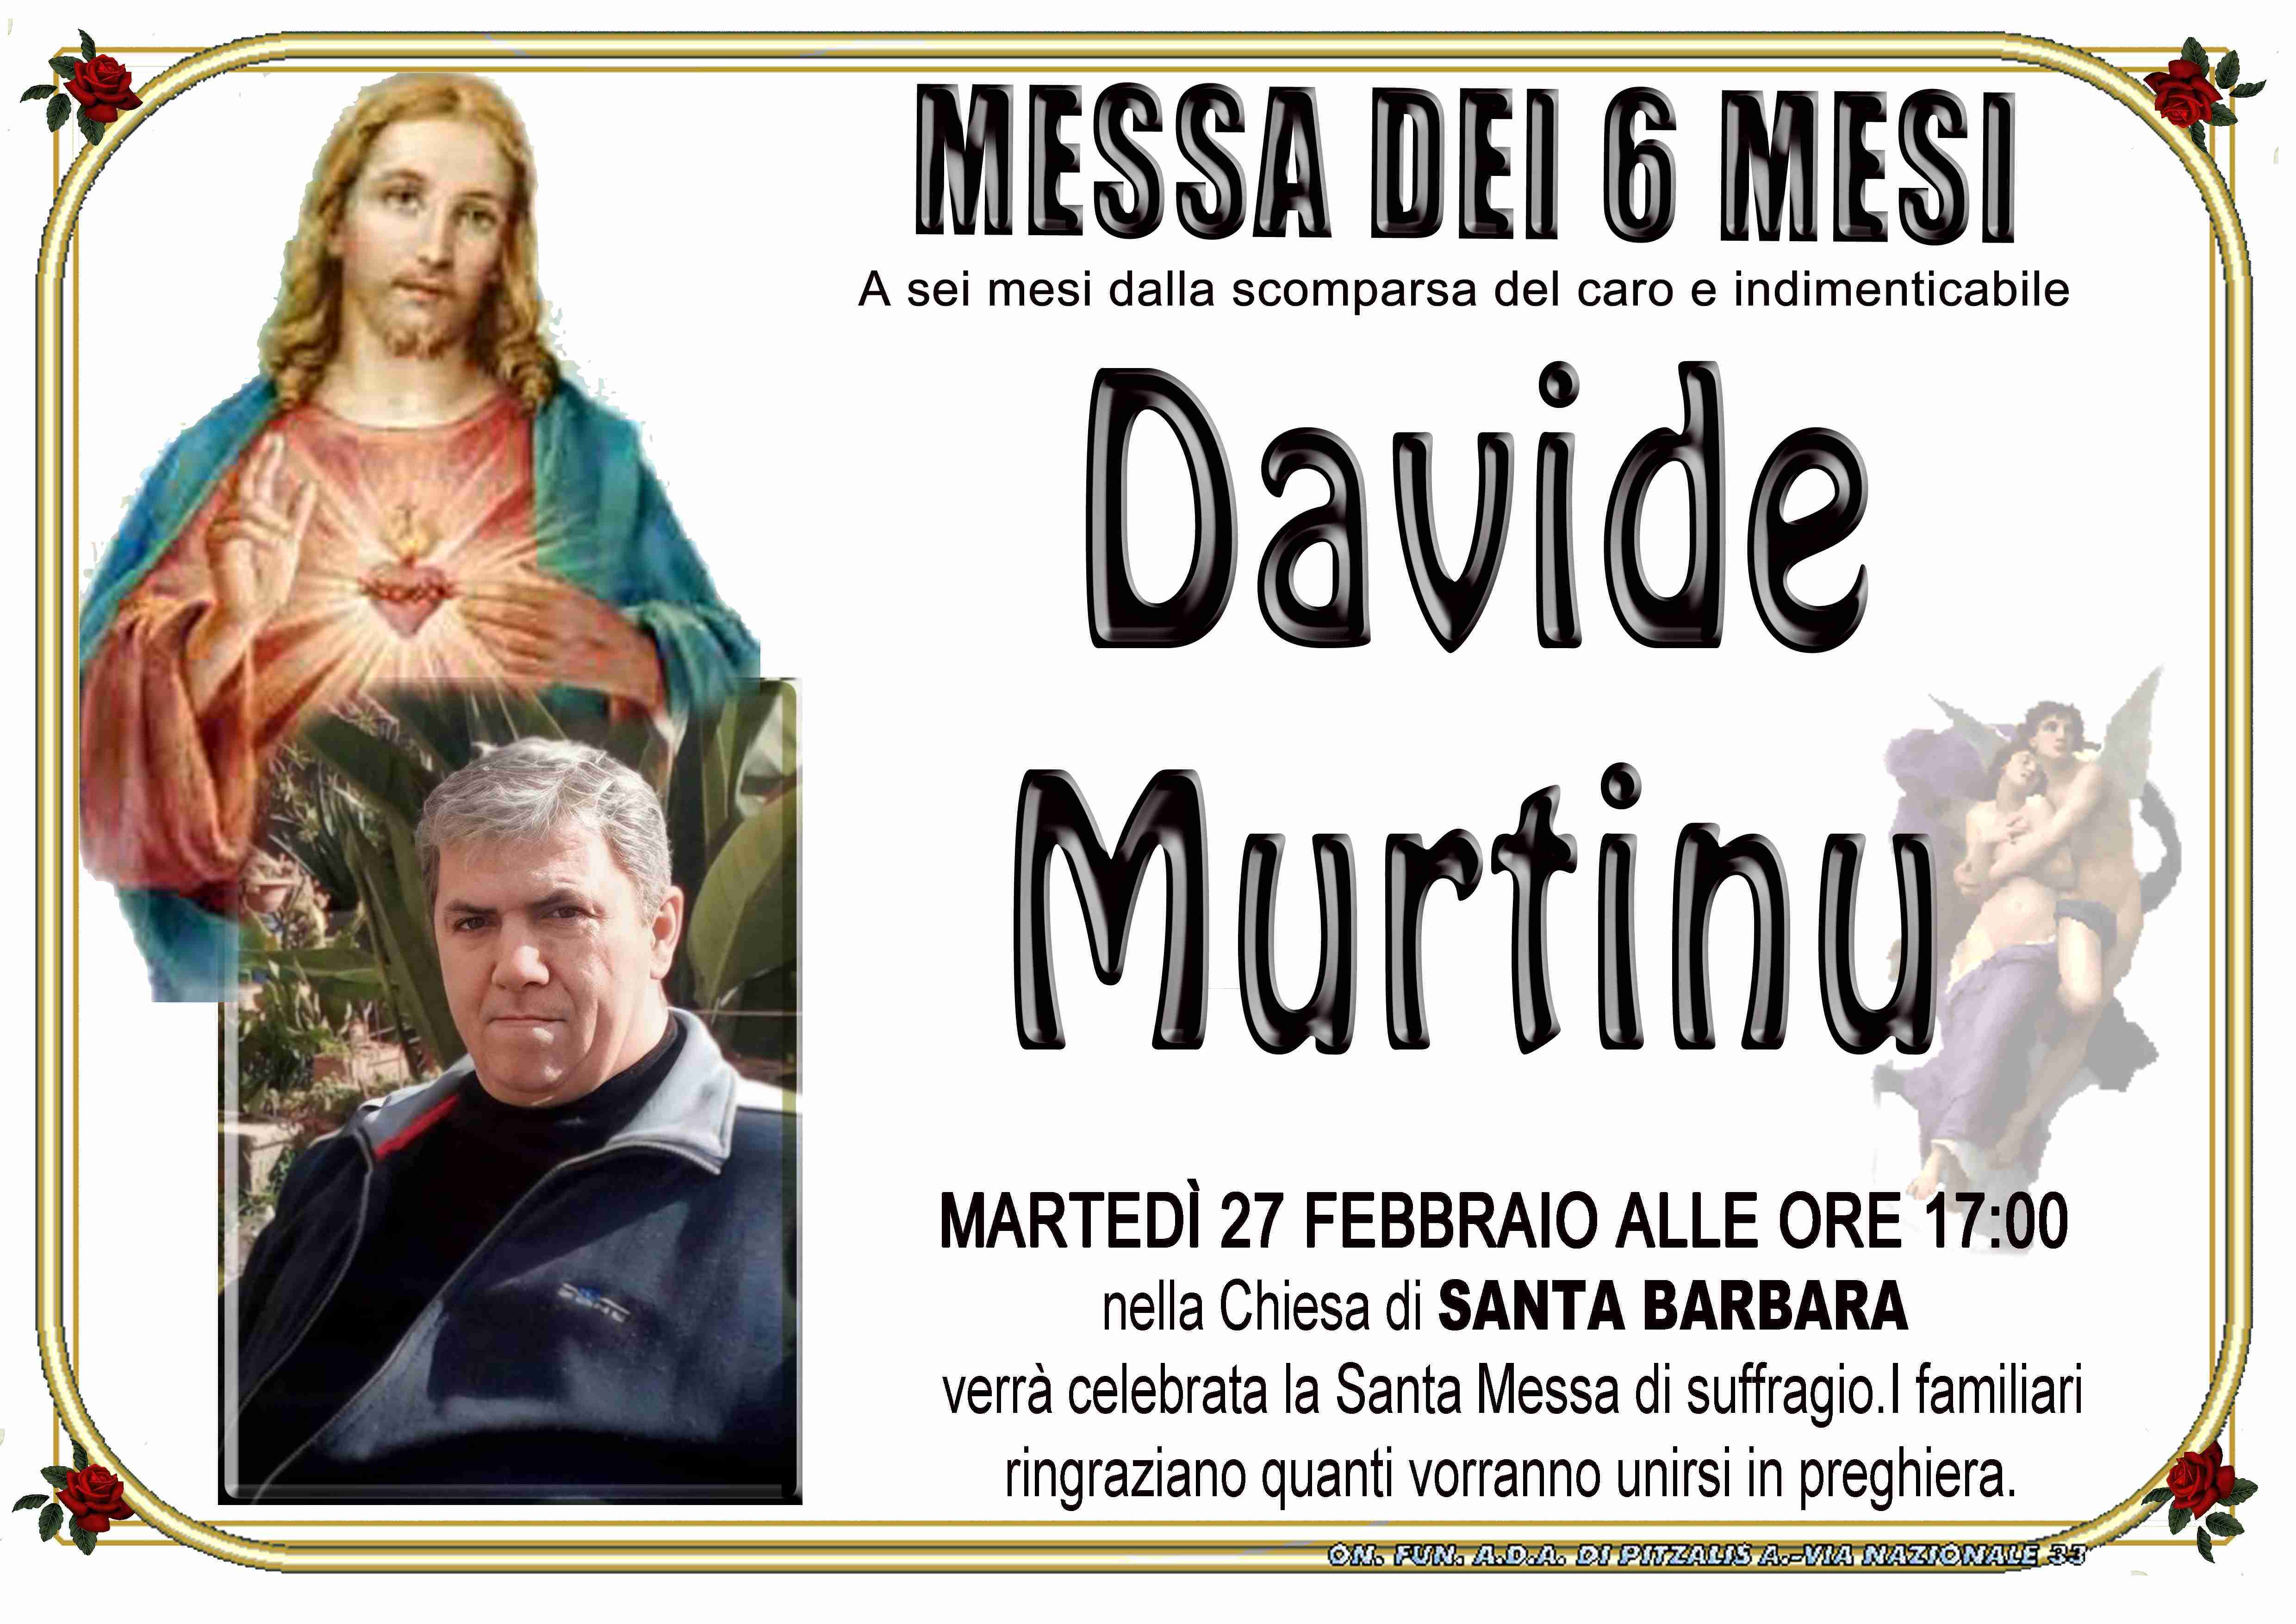 Davide Murtinu